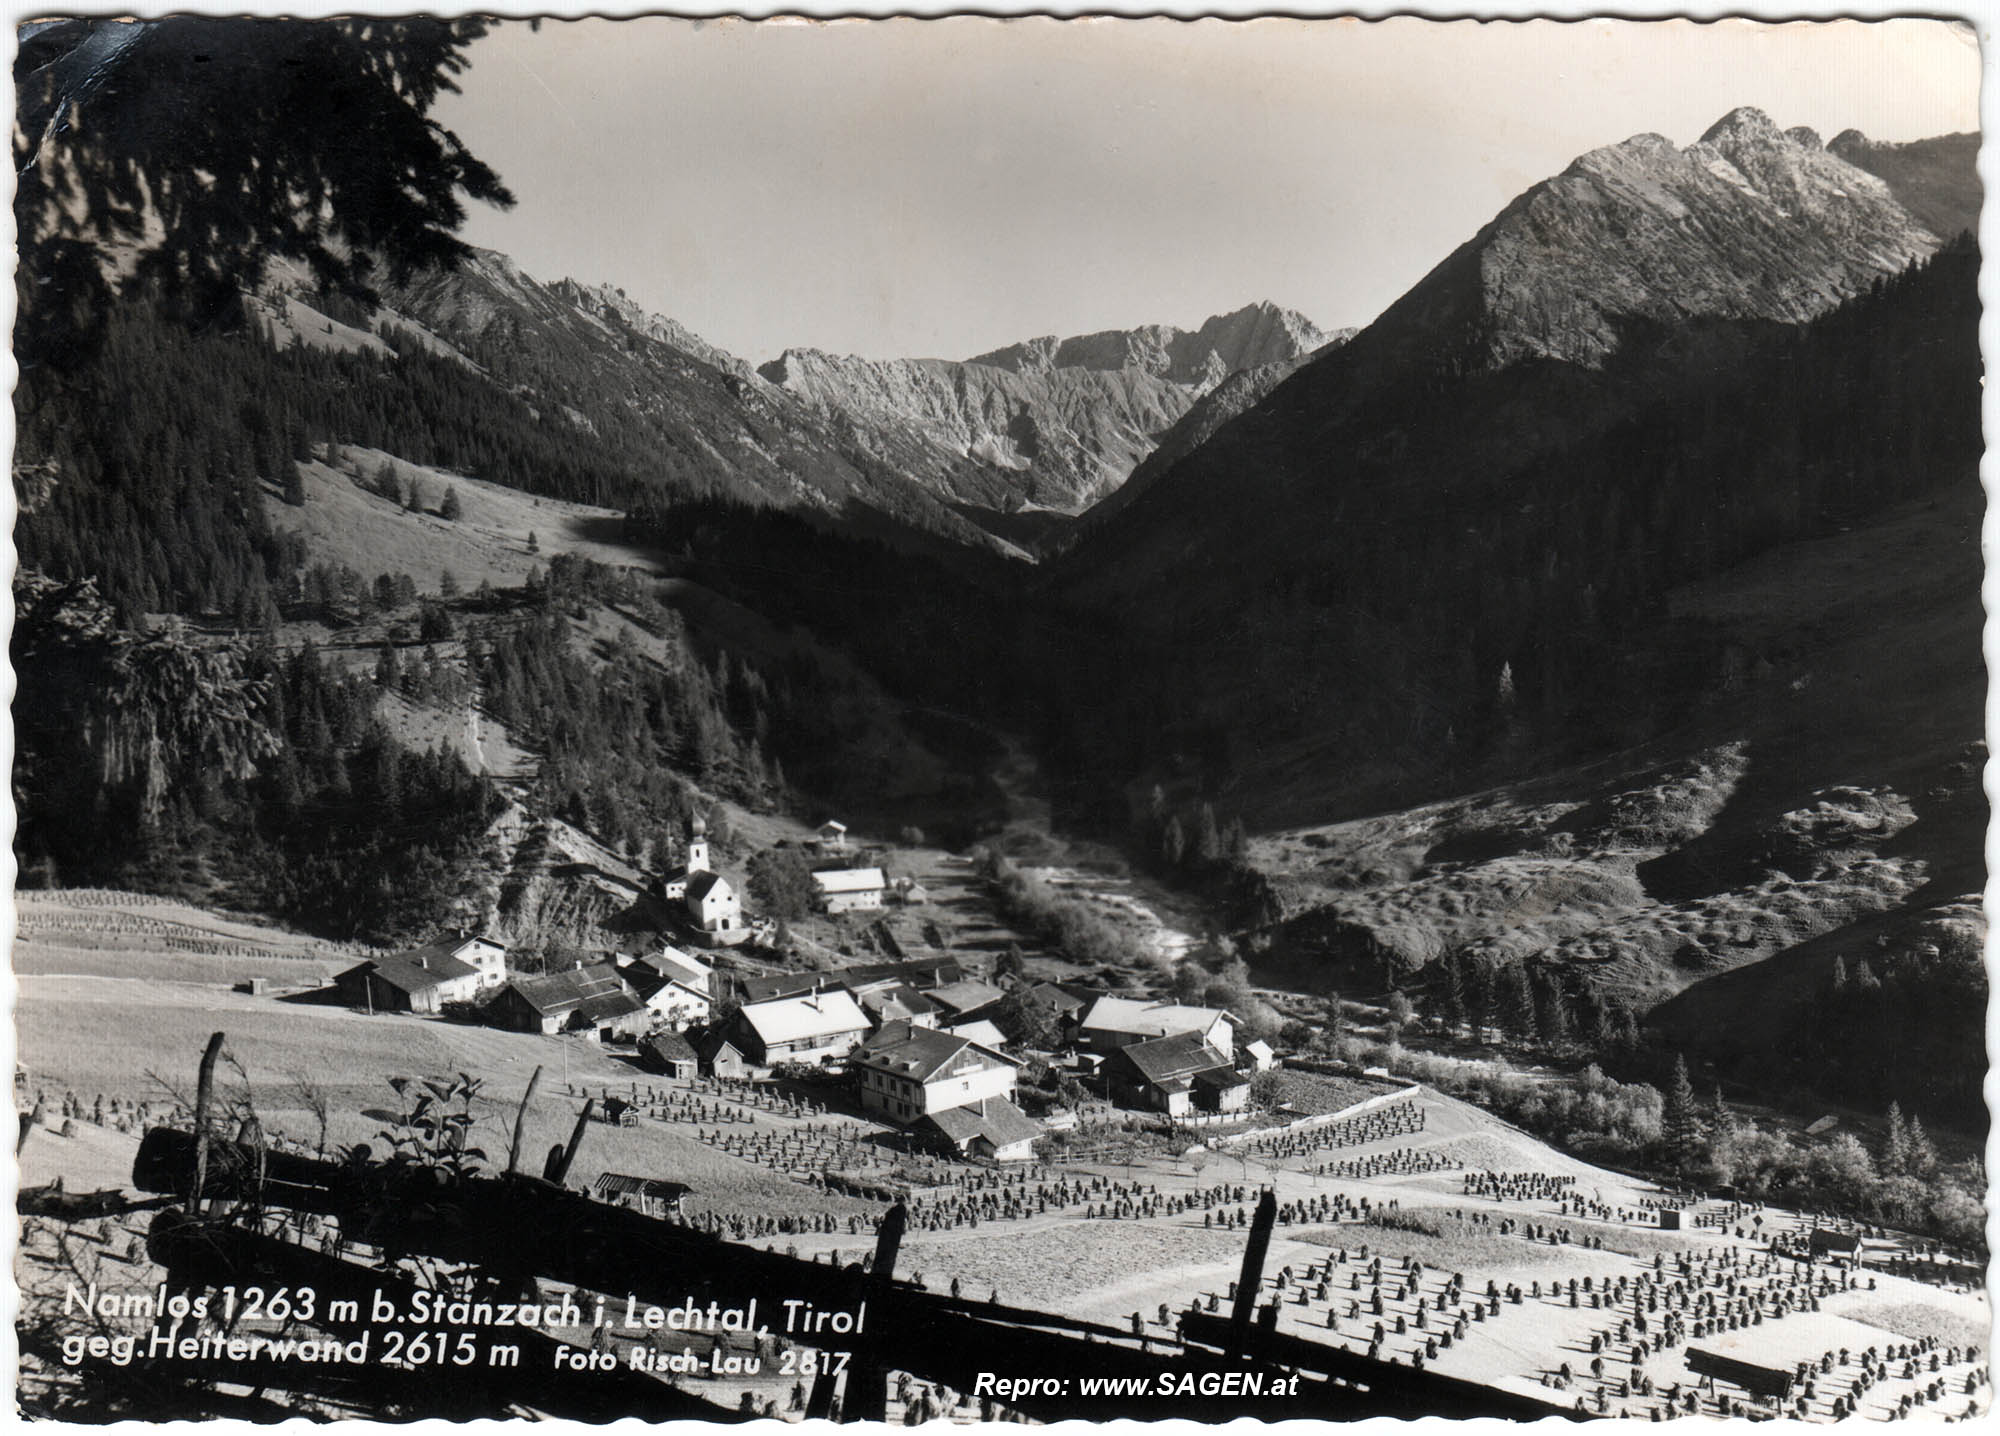 Namlos bei Stanzach im Lechtal, Tirol